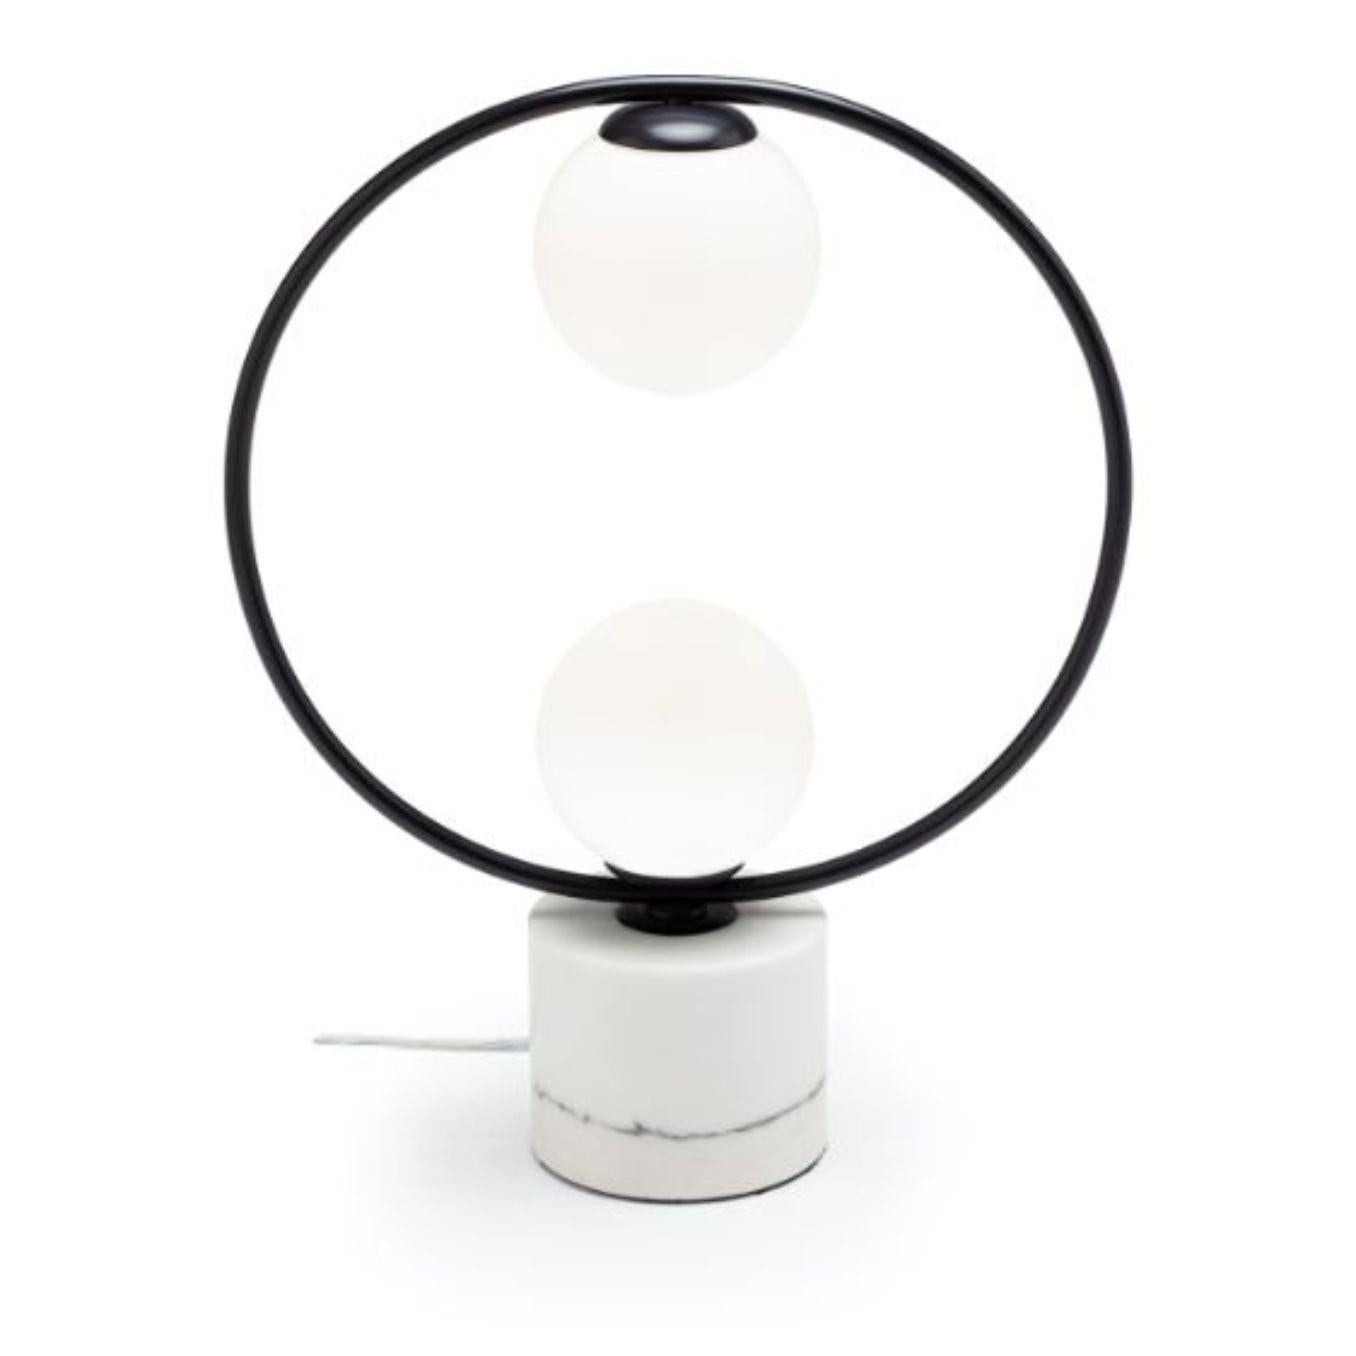 Lampe de table Blackloop II avec base en marbre par Dooq.
Dimensions : L 43 x P 15 x H 53 cm.
Matériaux : métal laqué, métal poli ou brossé, marbre.
Disponible également en différentes couleurs et matériaux.

Informations :
230V/50Hz
2 x max. G9
LED